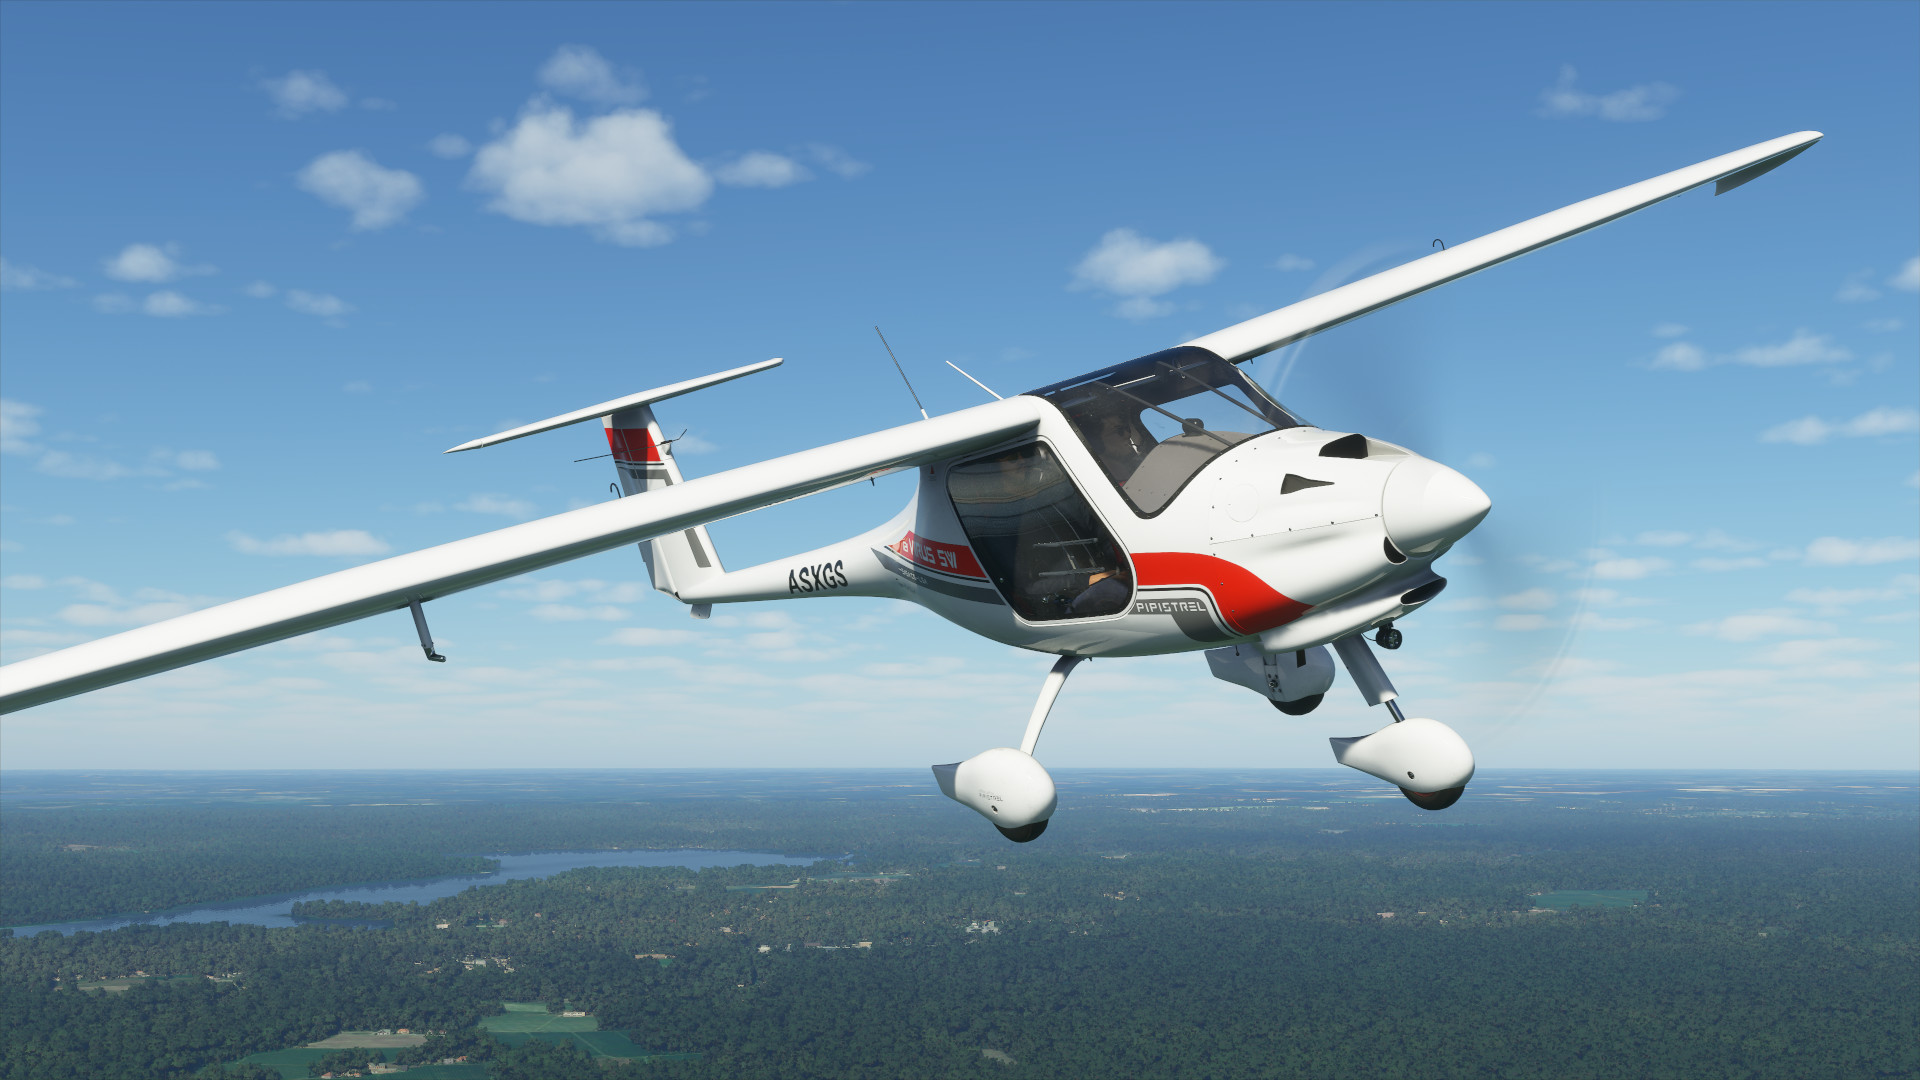 បំណះដំបូងរបស់ Microsoft Flight Simulator នឹងមកដល់សប្តាហ៍ក្រោយ។ កំណត់ចំណាំបឋមបានចេញផ្សាយ